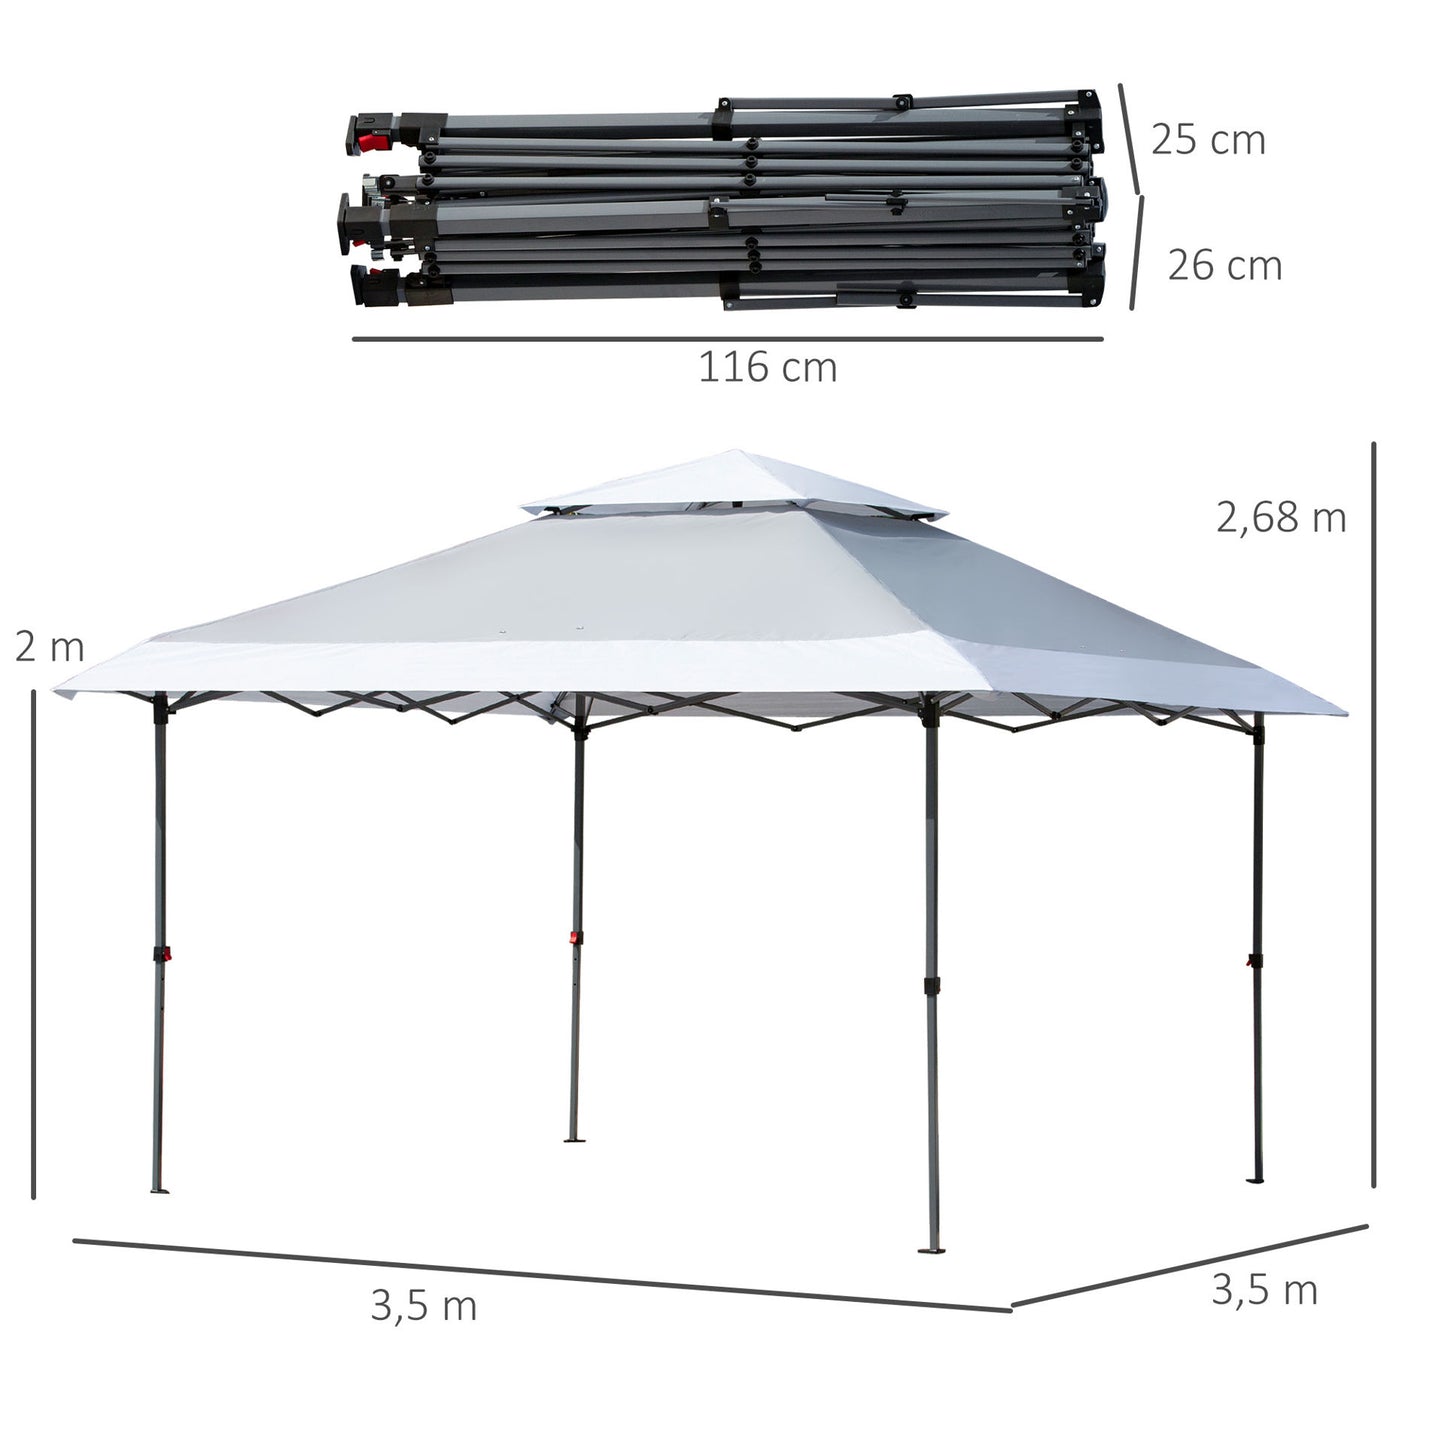 Tente pop-up pliante Nancy’s Cove Point Pavilion - Gris, Blanc - Acier, Tissu Oxford - 1,37 cm x 1,37 cm x 1,05 cm